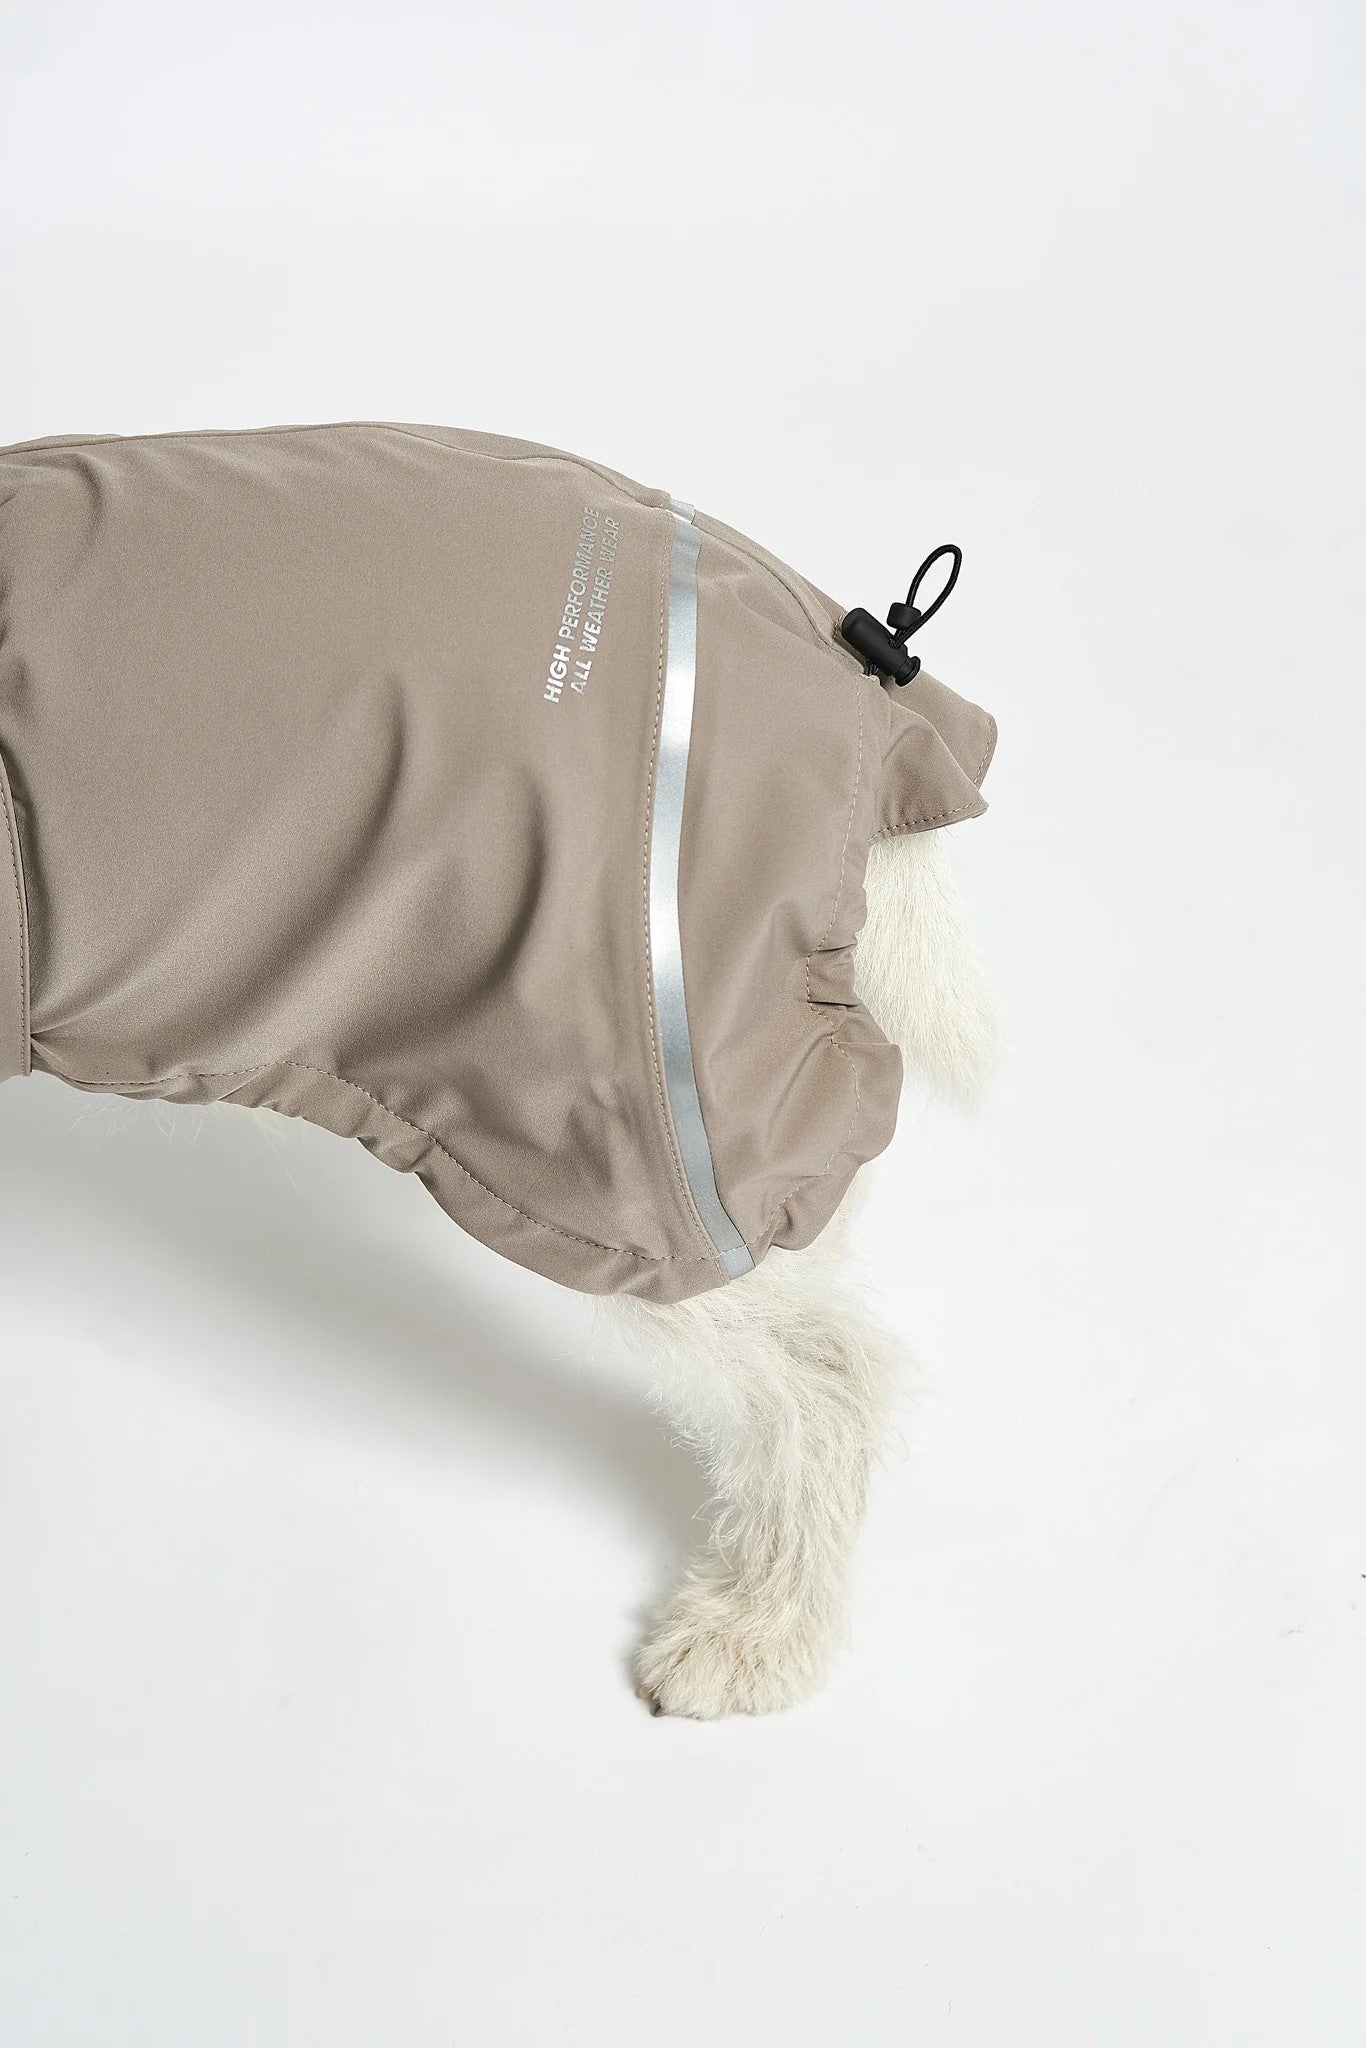 Manteau pour chien imperméable, parfait en cas de pluie : Valentina détail arrière - kasibe